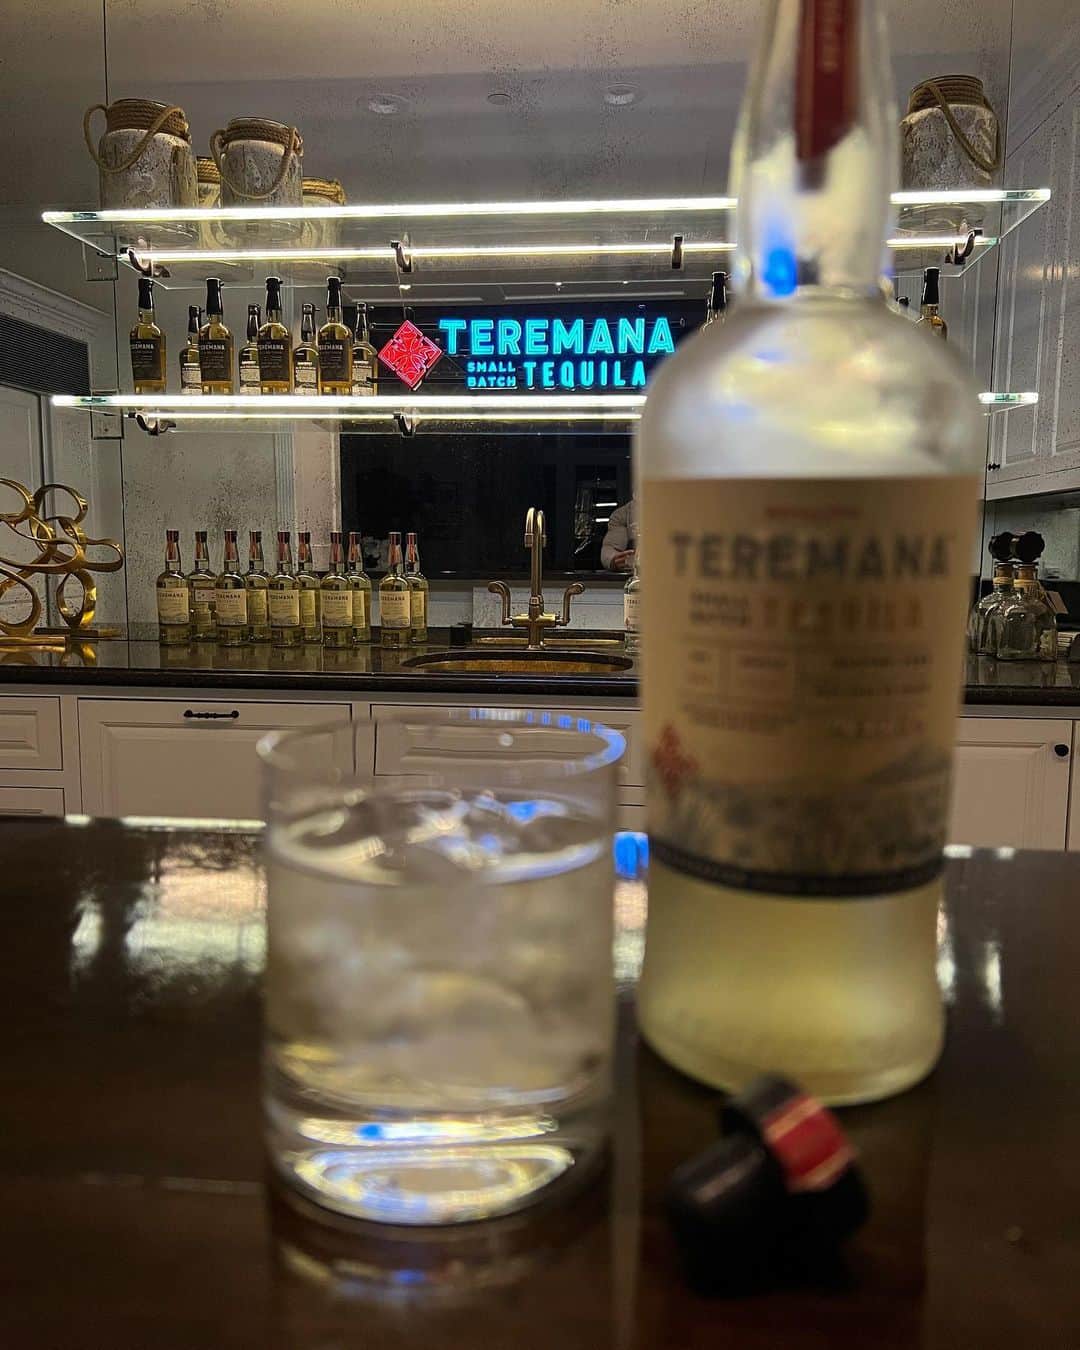 ドウェイン・ジョンソンさんのインスタグラム写真 - (ドウェイン・ジョンソンInstagram)「It’s OFFICIAL & UNPRECEDENTED.   Our @teremana has sold over 600,000 nine-liter cases in 2021, making it the FASTEST GROWING TEQUILA IN THE HISTORY OF ALL SPIRITS.   THANK YOU for making Teremana your #1 tequila and Tequila of the Year!🥇   For some context on why Teremana’s 600,000 cases sold is “holy shit” news/  George Clooney’s Casamigos Tequila was selling about 170,000 cases when it was acquired by Diageo for $1 Billion dollars.   Teremana selling 600,000 cases in just ONE YEAR, really puts this growth into extraordinary perspective.   It’s truly unprecedented and it’s all because of YOU ~ my MANA OHANA ~ THANK YOU!!   Thank you to our global distribution partners, Mast Jäegermeister for their commitment and aligned vision in making Teremana Tequila a true GLOBAL TEQUILA BRAND.   Salud’ to highest in quality and best in taste!   ~ dj 🥃 founder  teremana tequila  #legacy」1月6日 17時44分 - therock